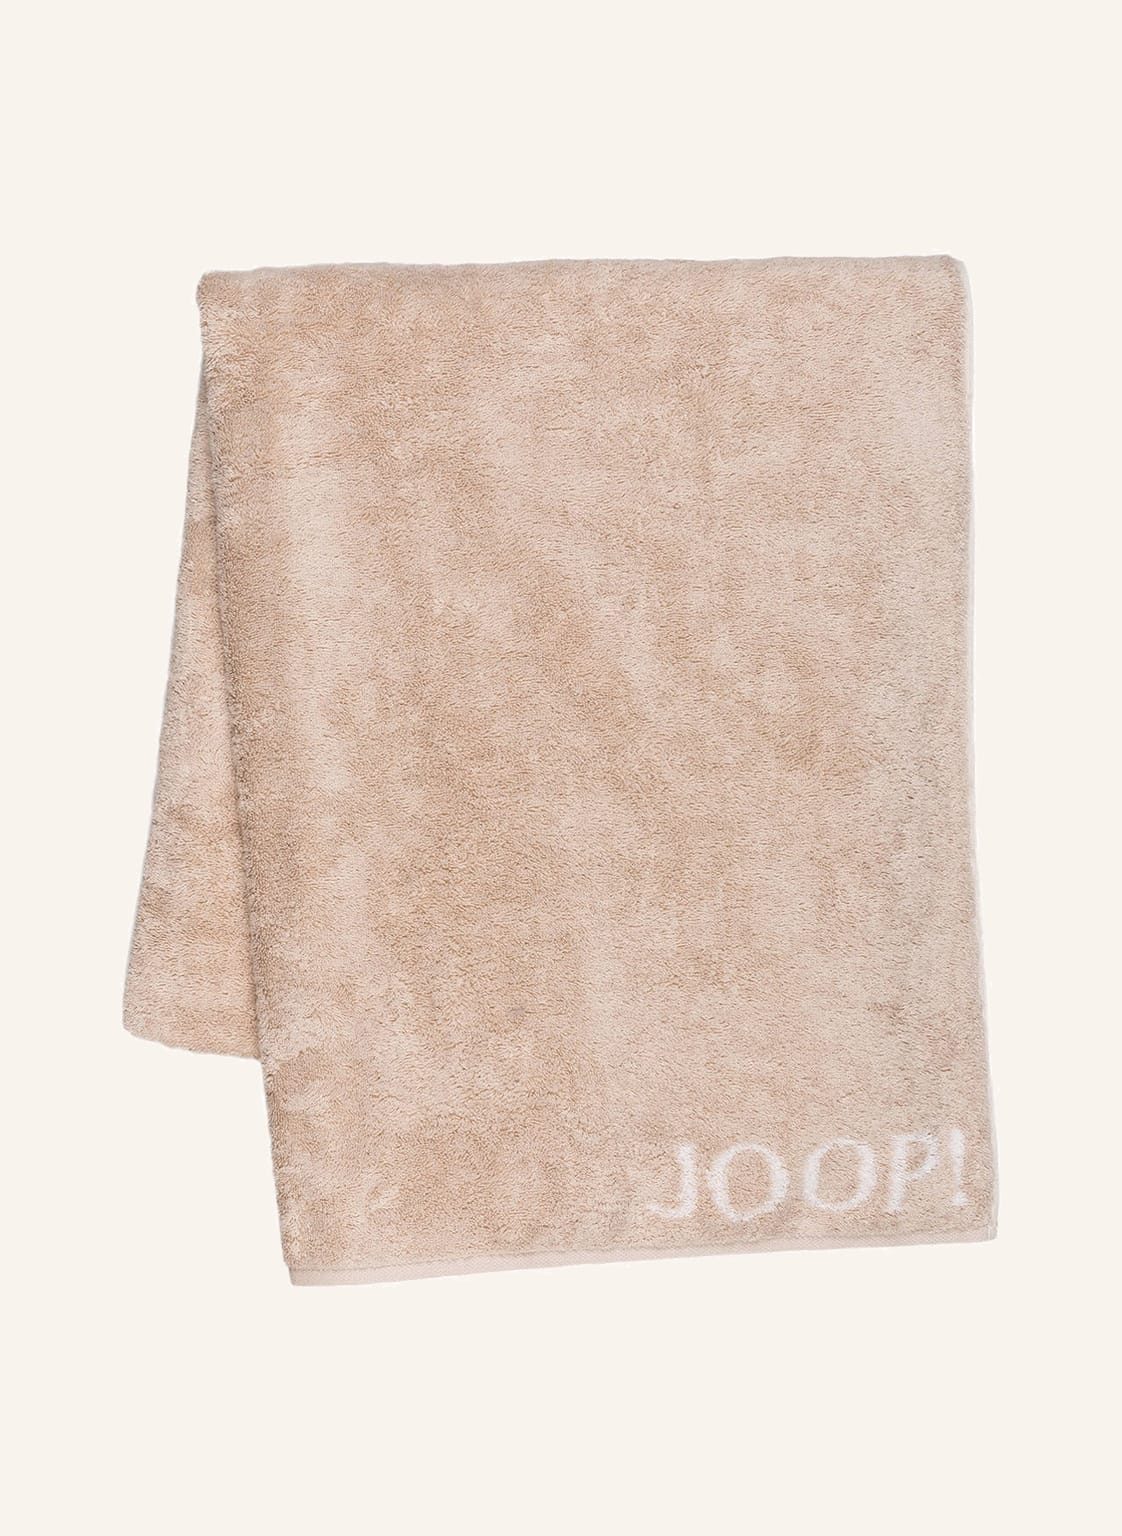 Image of Joop! Saunatuch Classic Doubleface beige